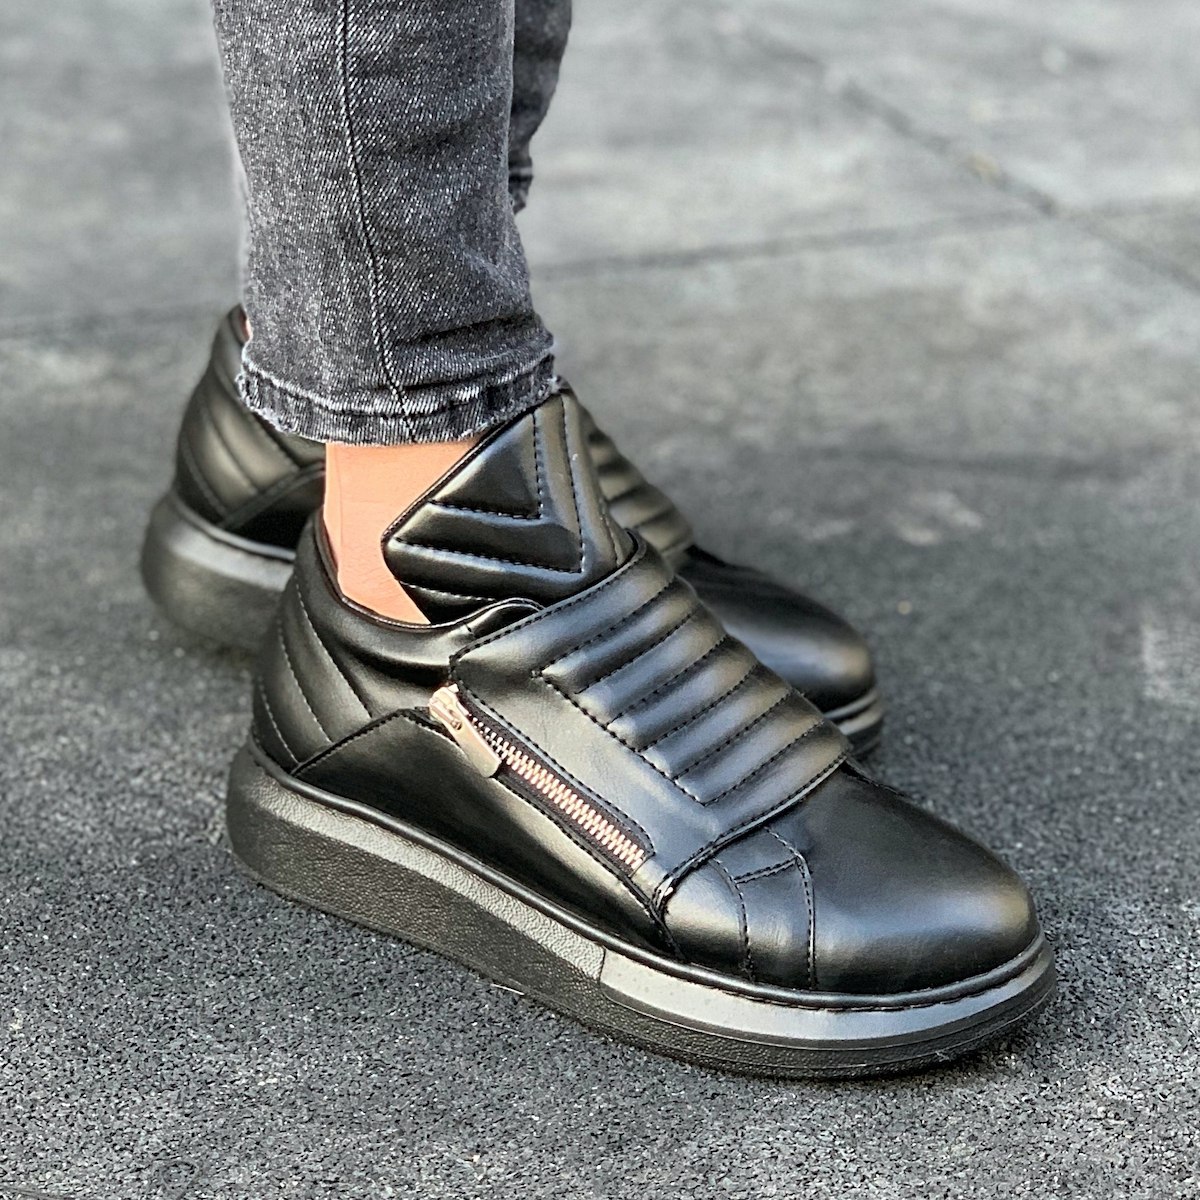 Men's Hype Sole "Black Armor" Sneakers - 1